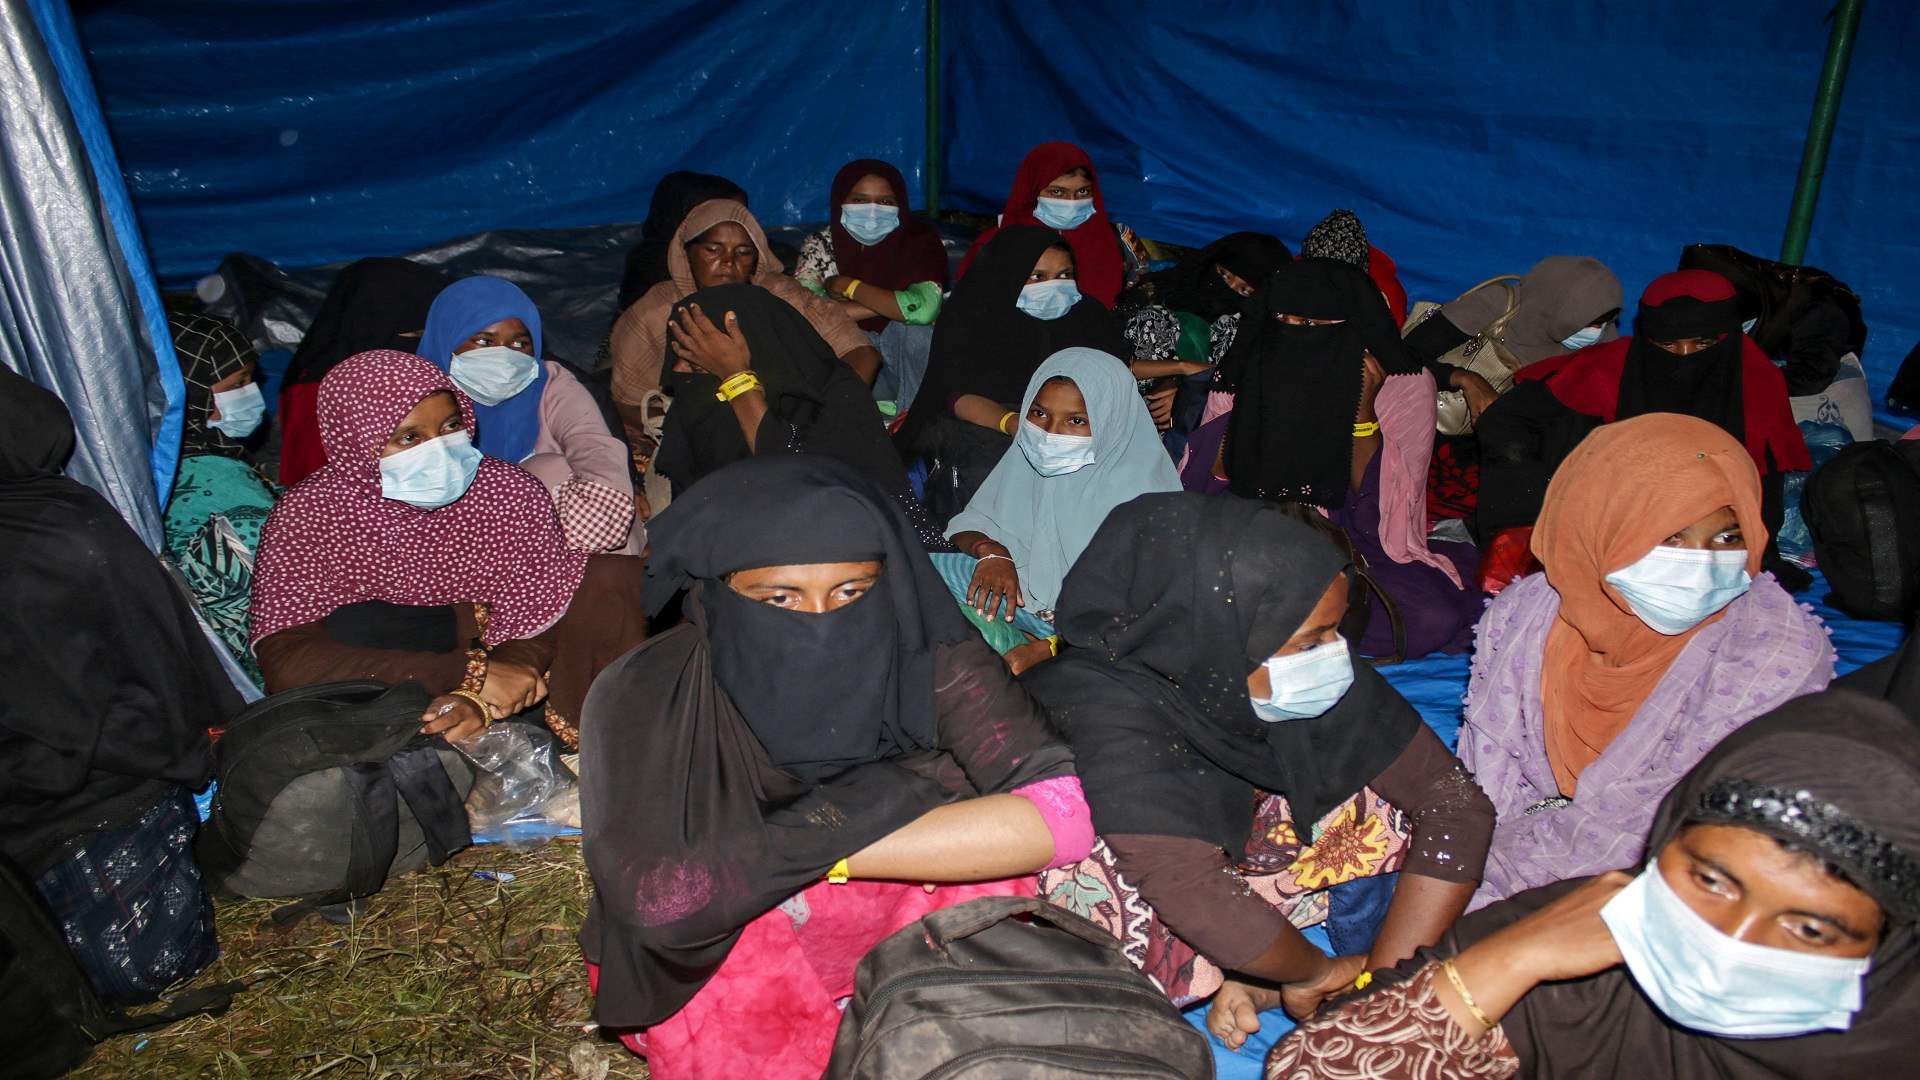 وصول نحو 200 لاجئ من الروهينغا إلى إندونيسيا 